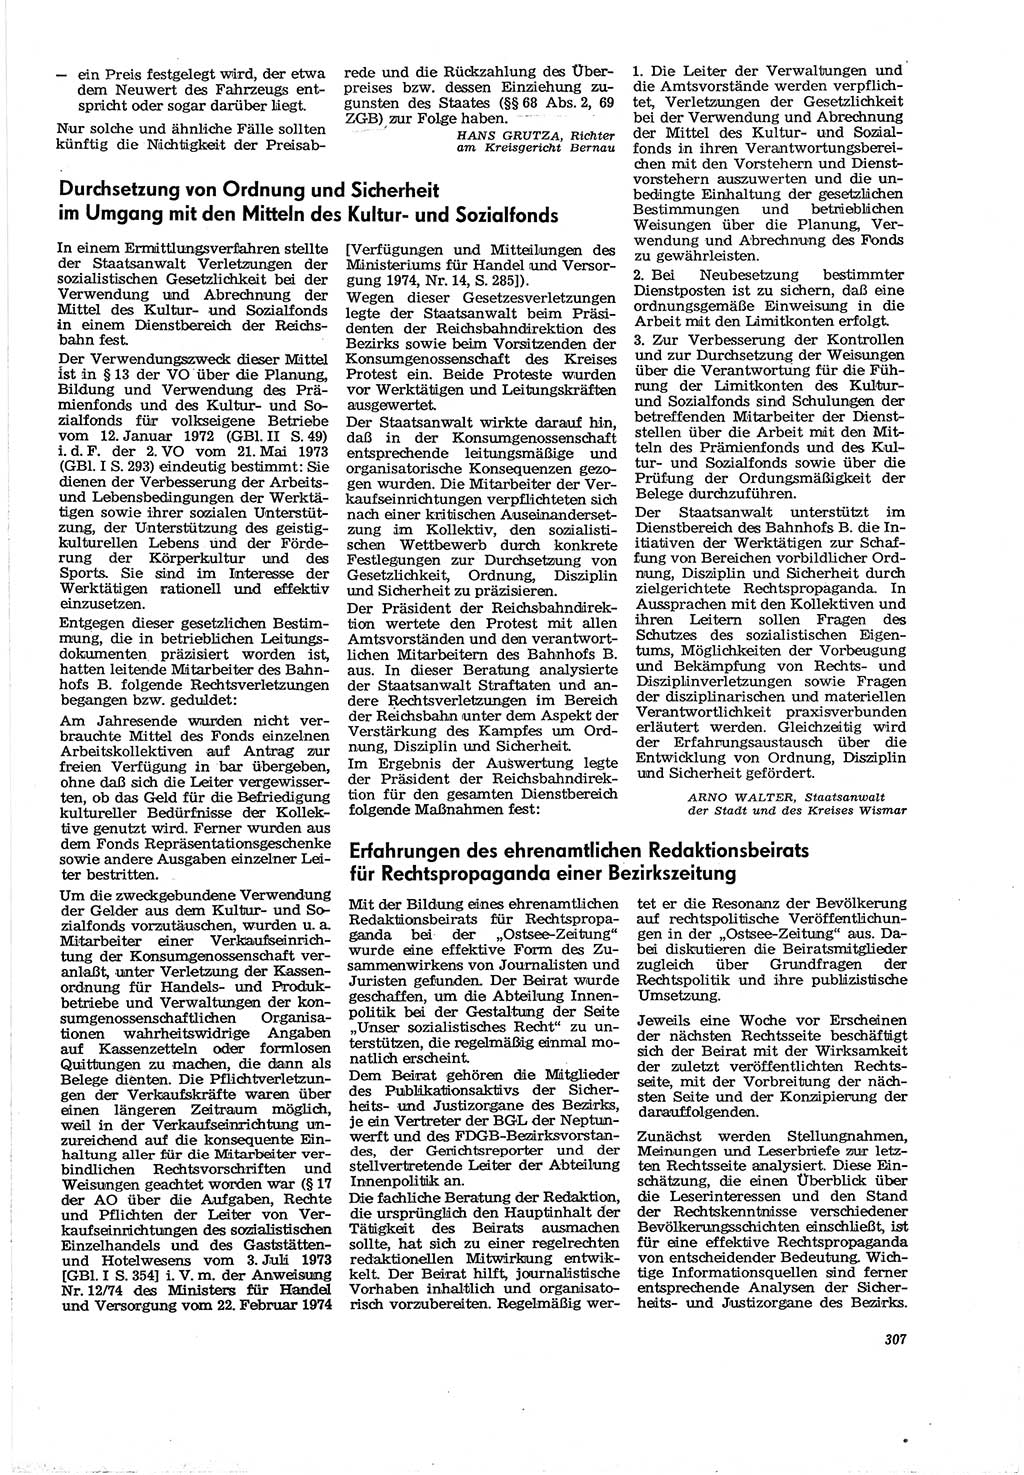 Neue Justiz (NJ), Zeitschrift für Recht und Rechtswissenschaft [Deutsche Demokratische Republik (DDR)], 30. Jahrgang 1976, Seite 307 (NJ DDR 1976, S. 307)